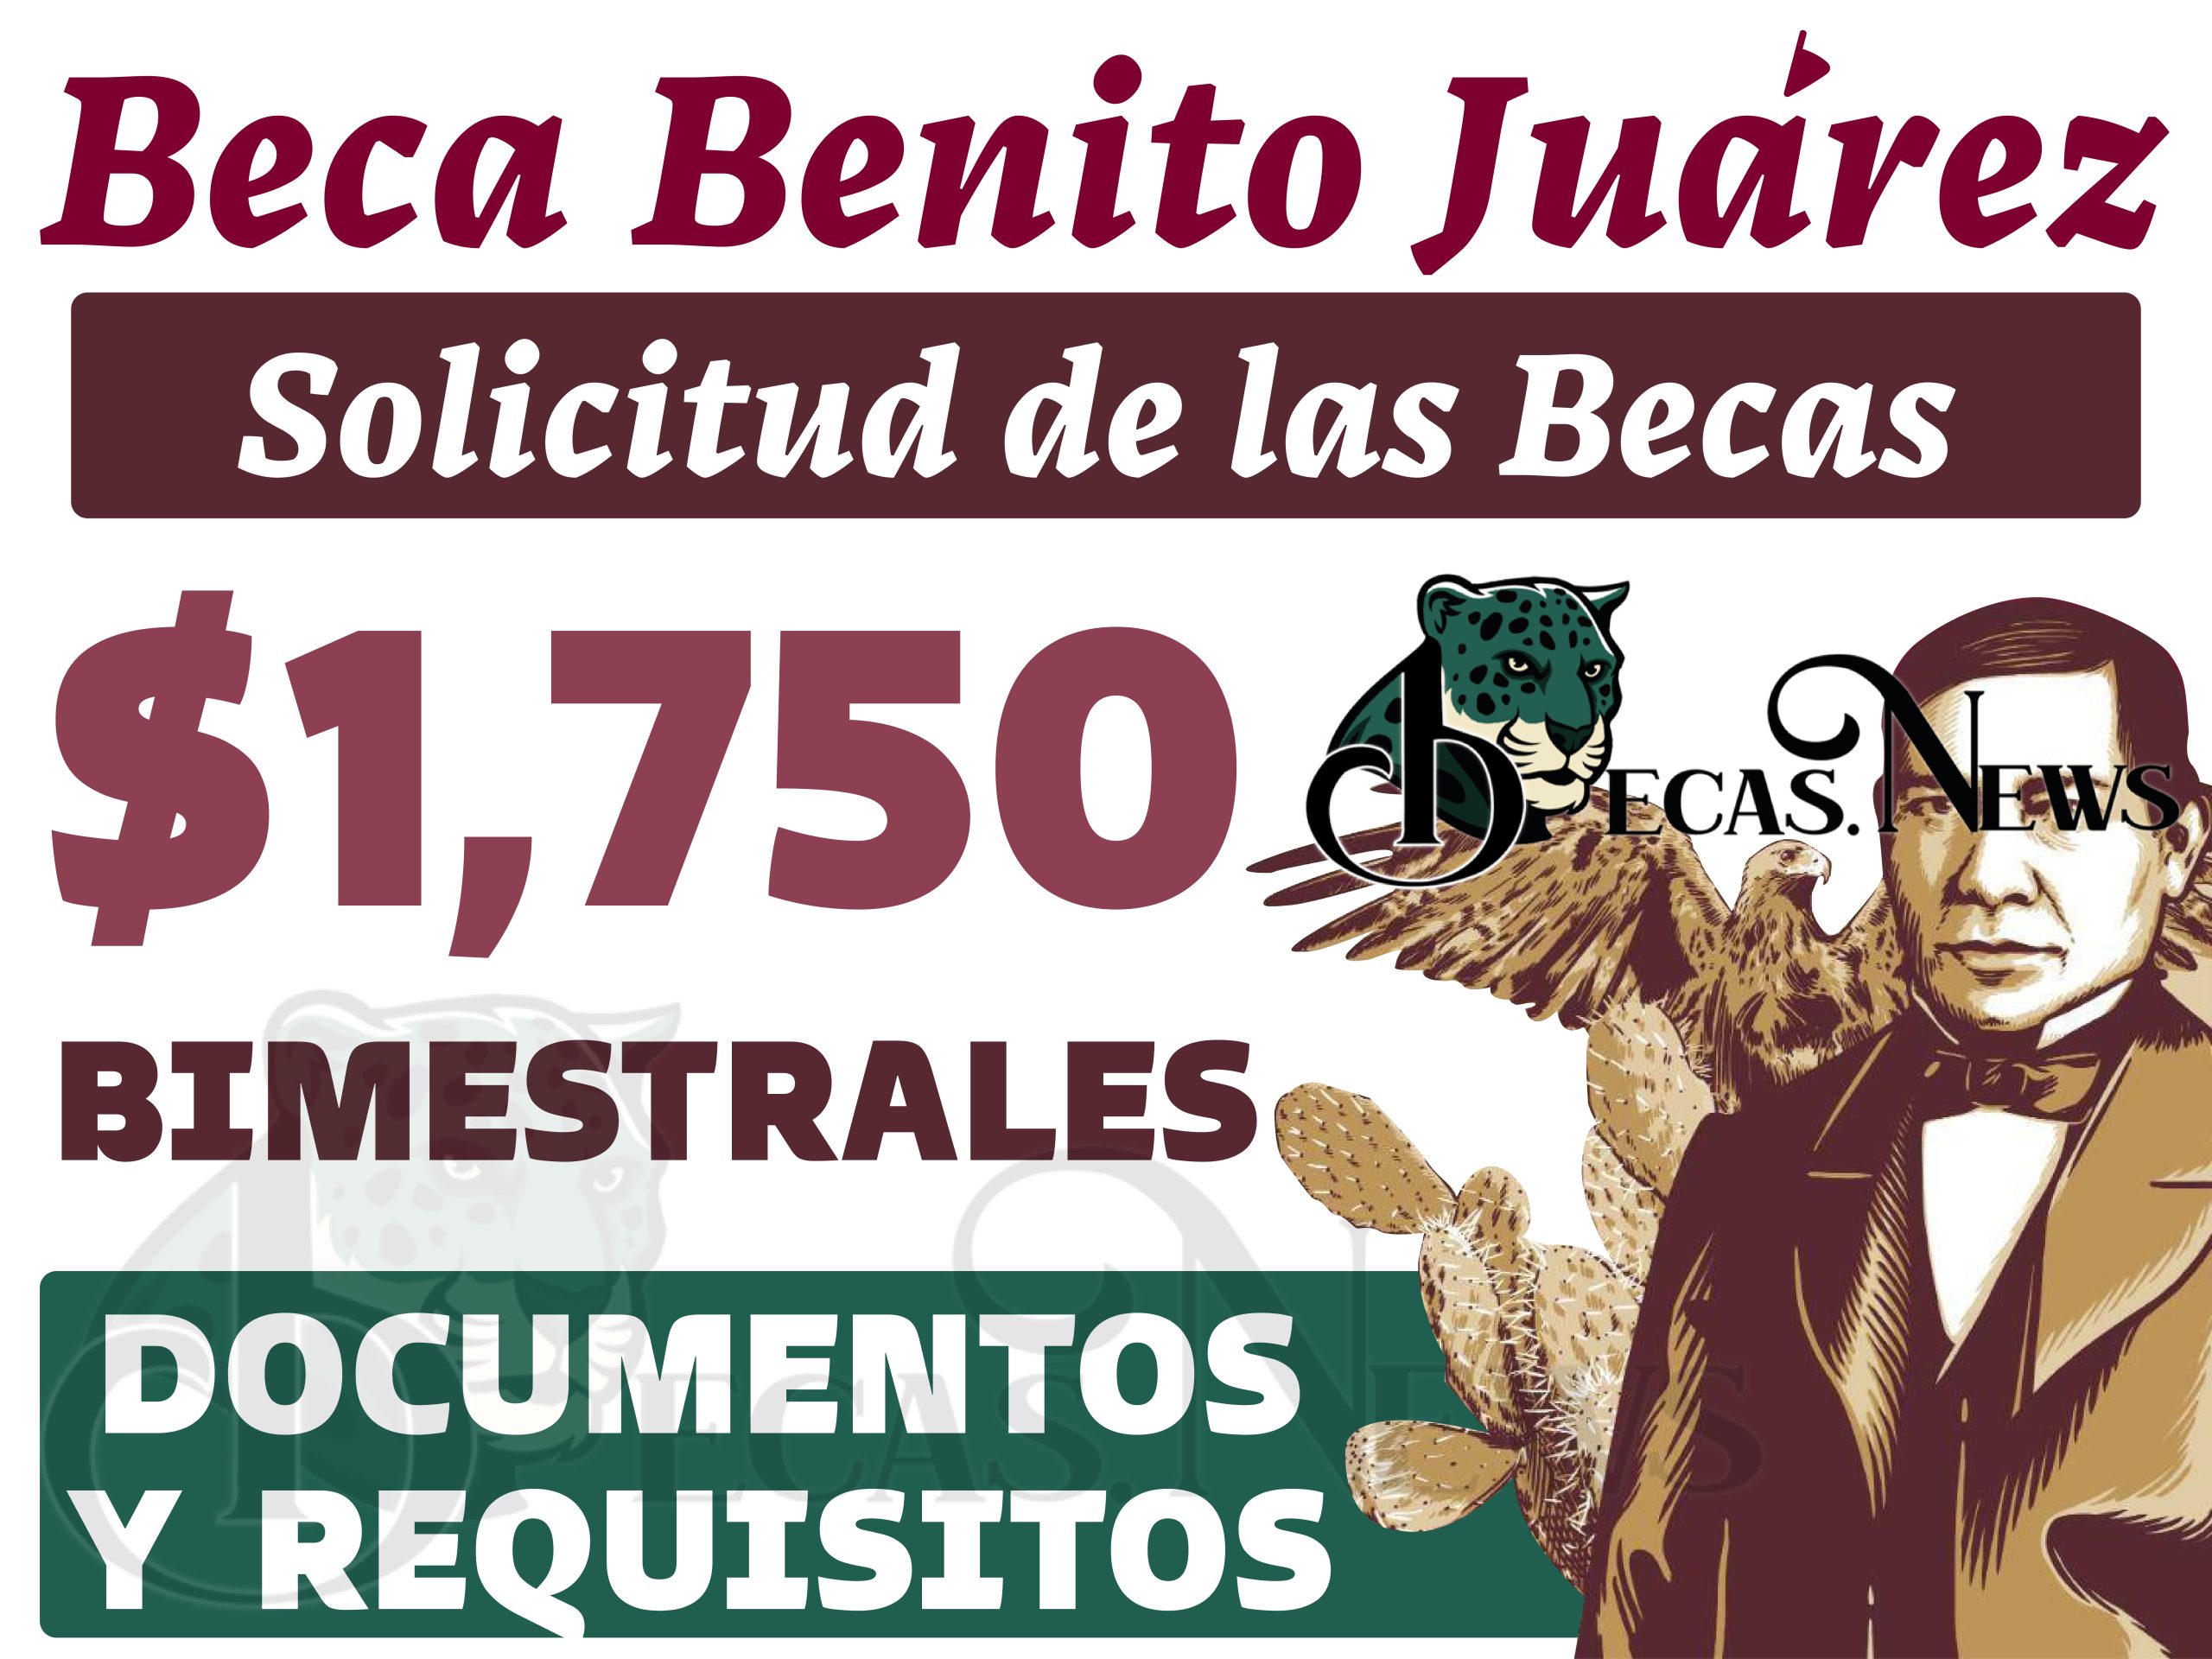 Información Detallada y Pasos a Seguir Proceso de Inscripción para las Becas Benito Juárez